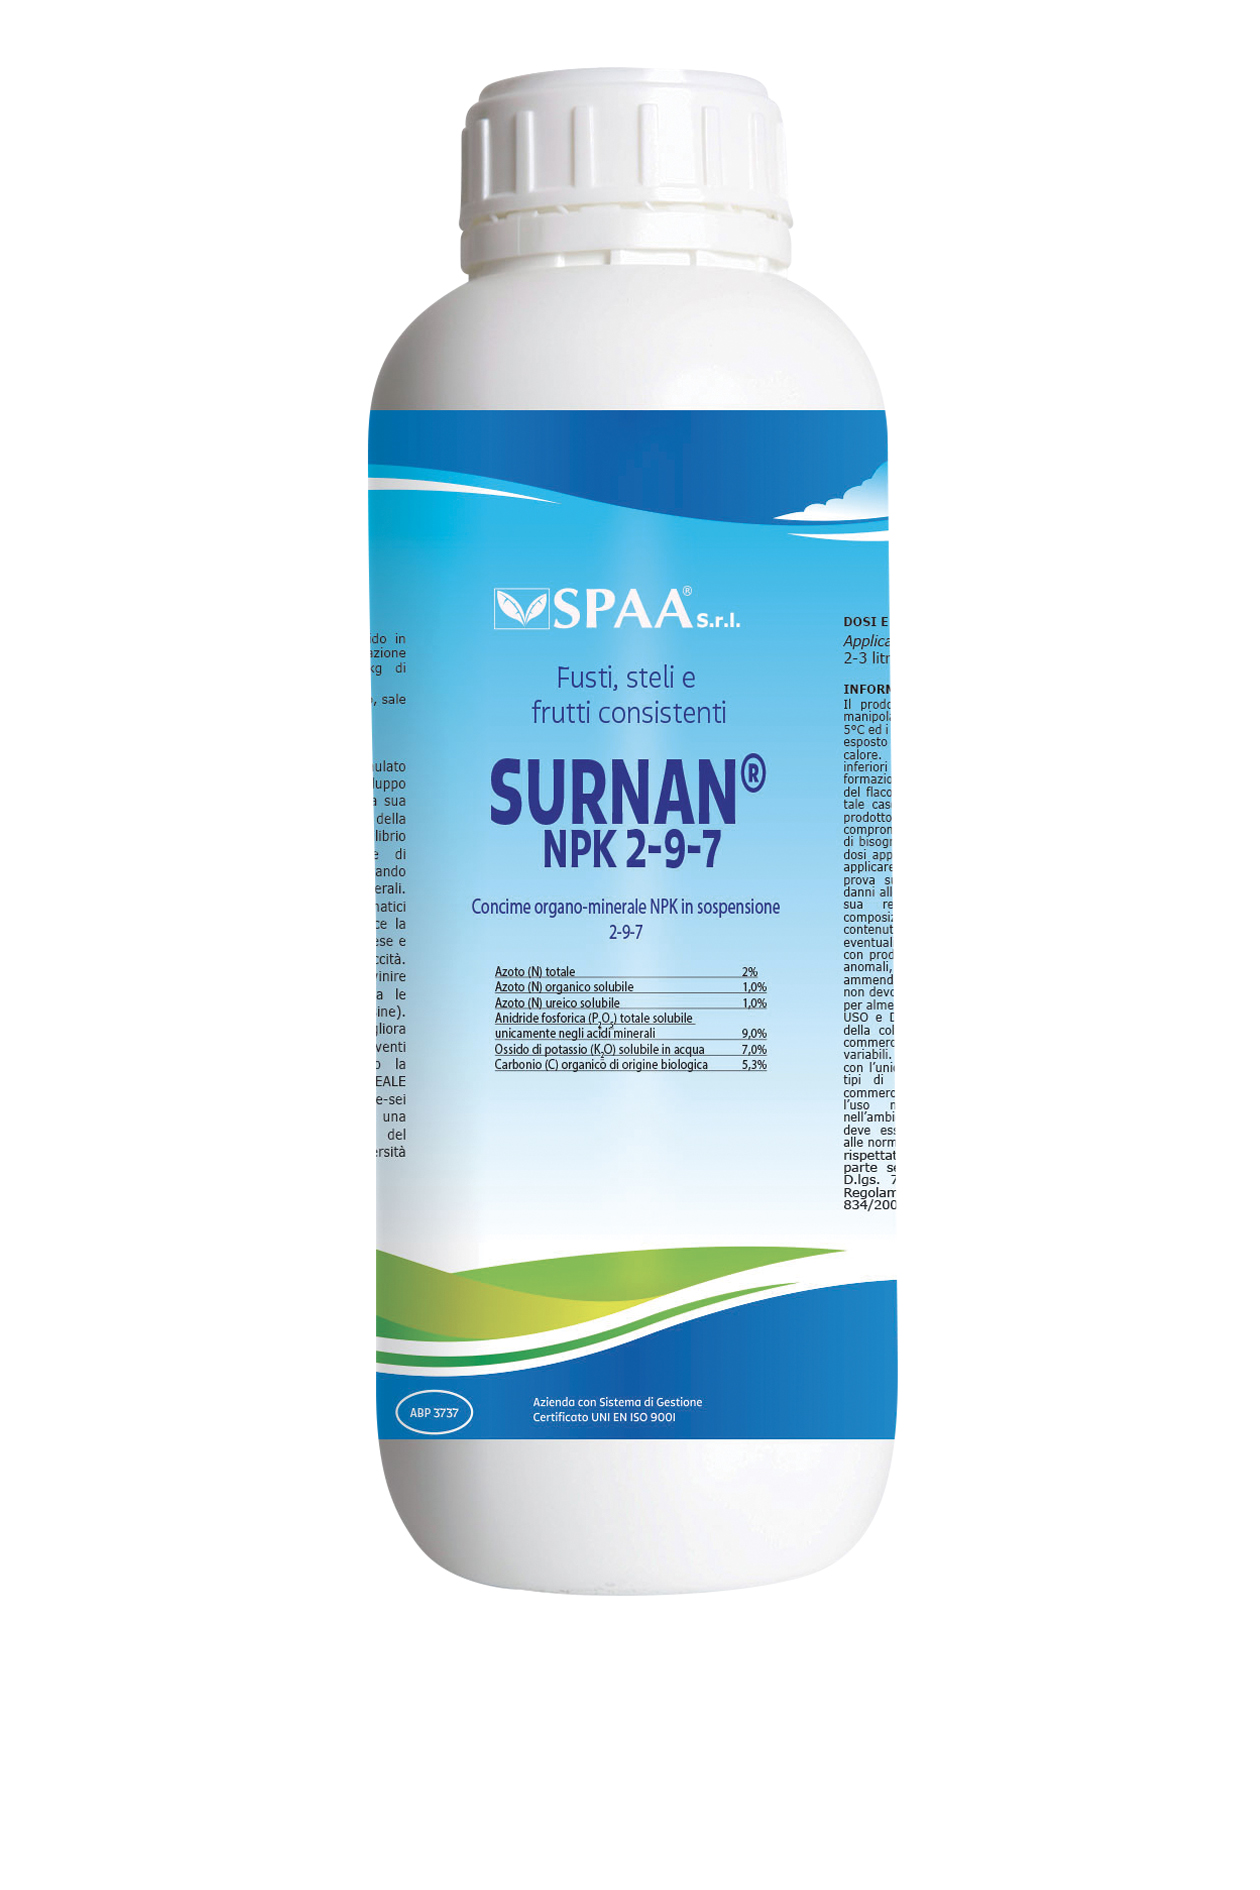 SURNAN® NPK 2-9-7